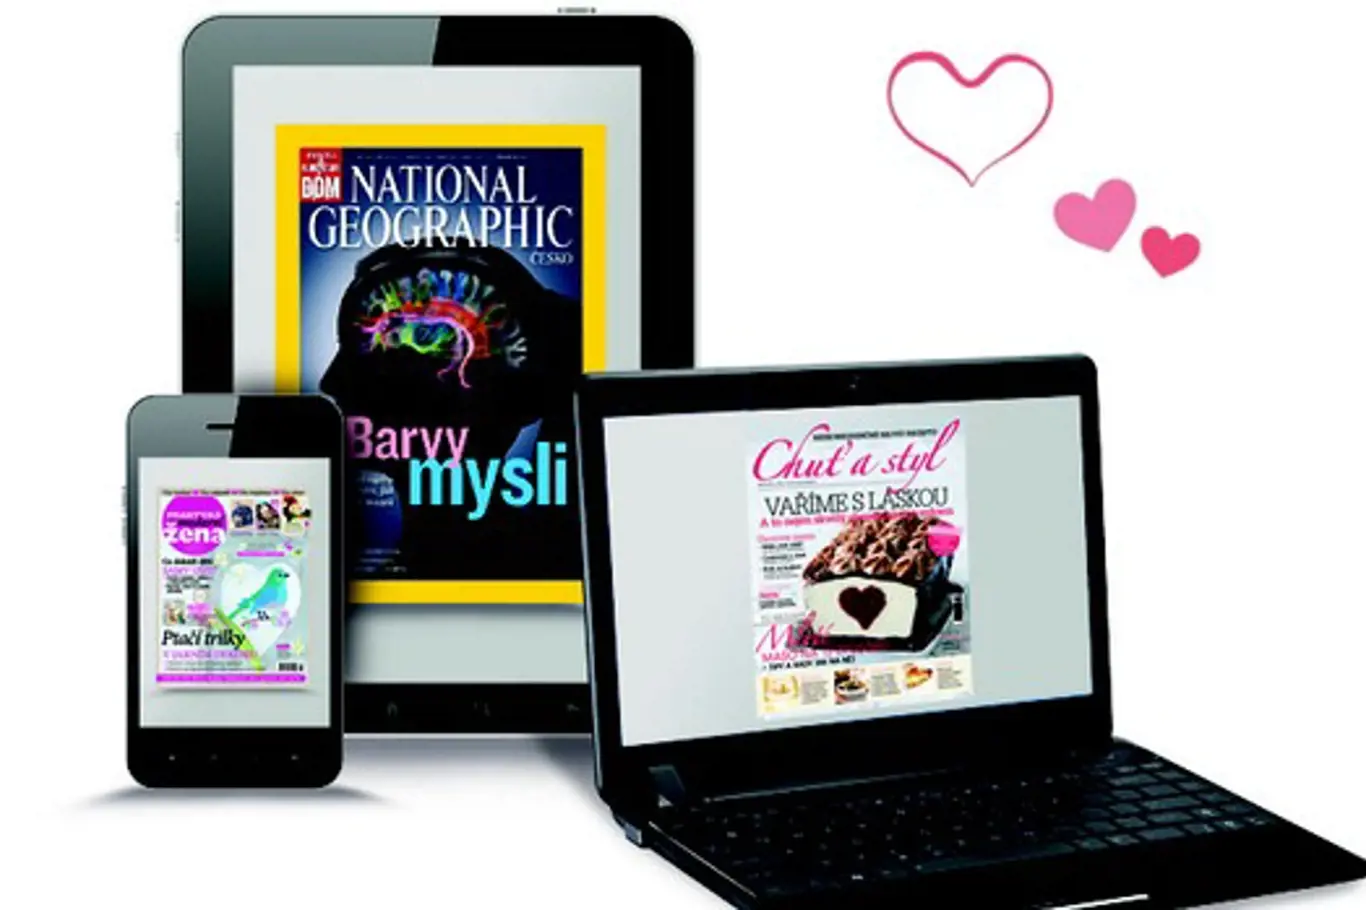 Jedinečná valentýnská nabídka: Předplatné časopisů za 50% ceny